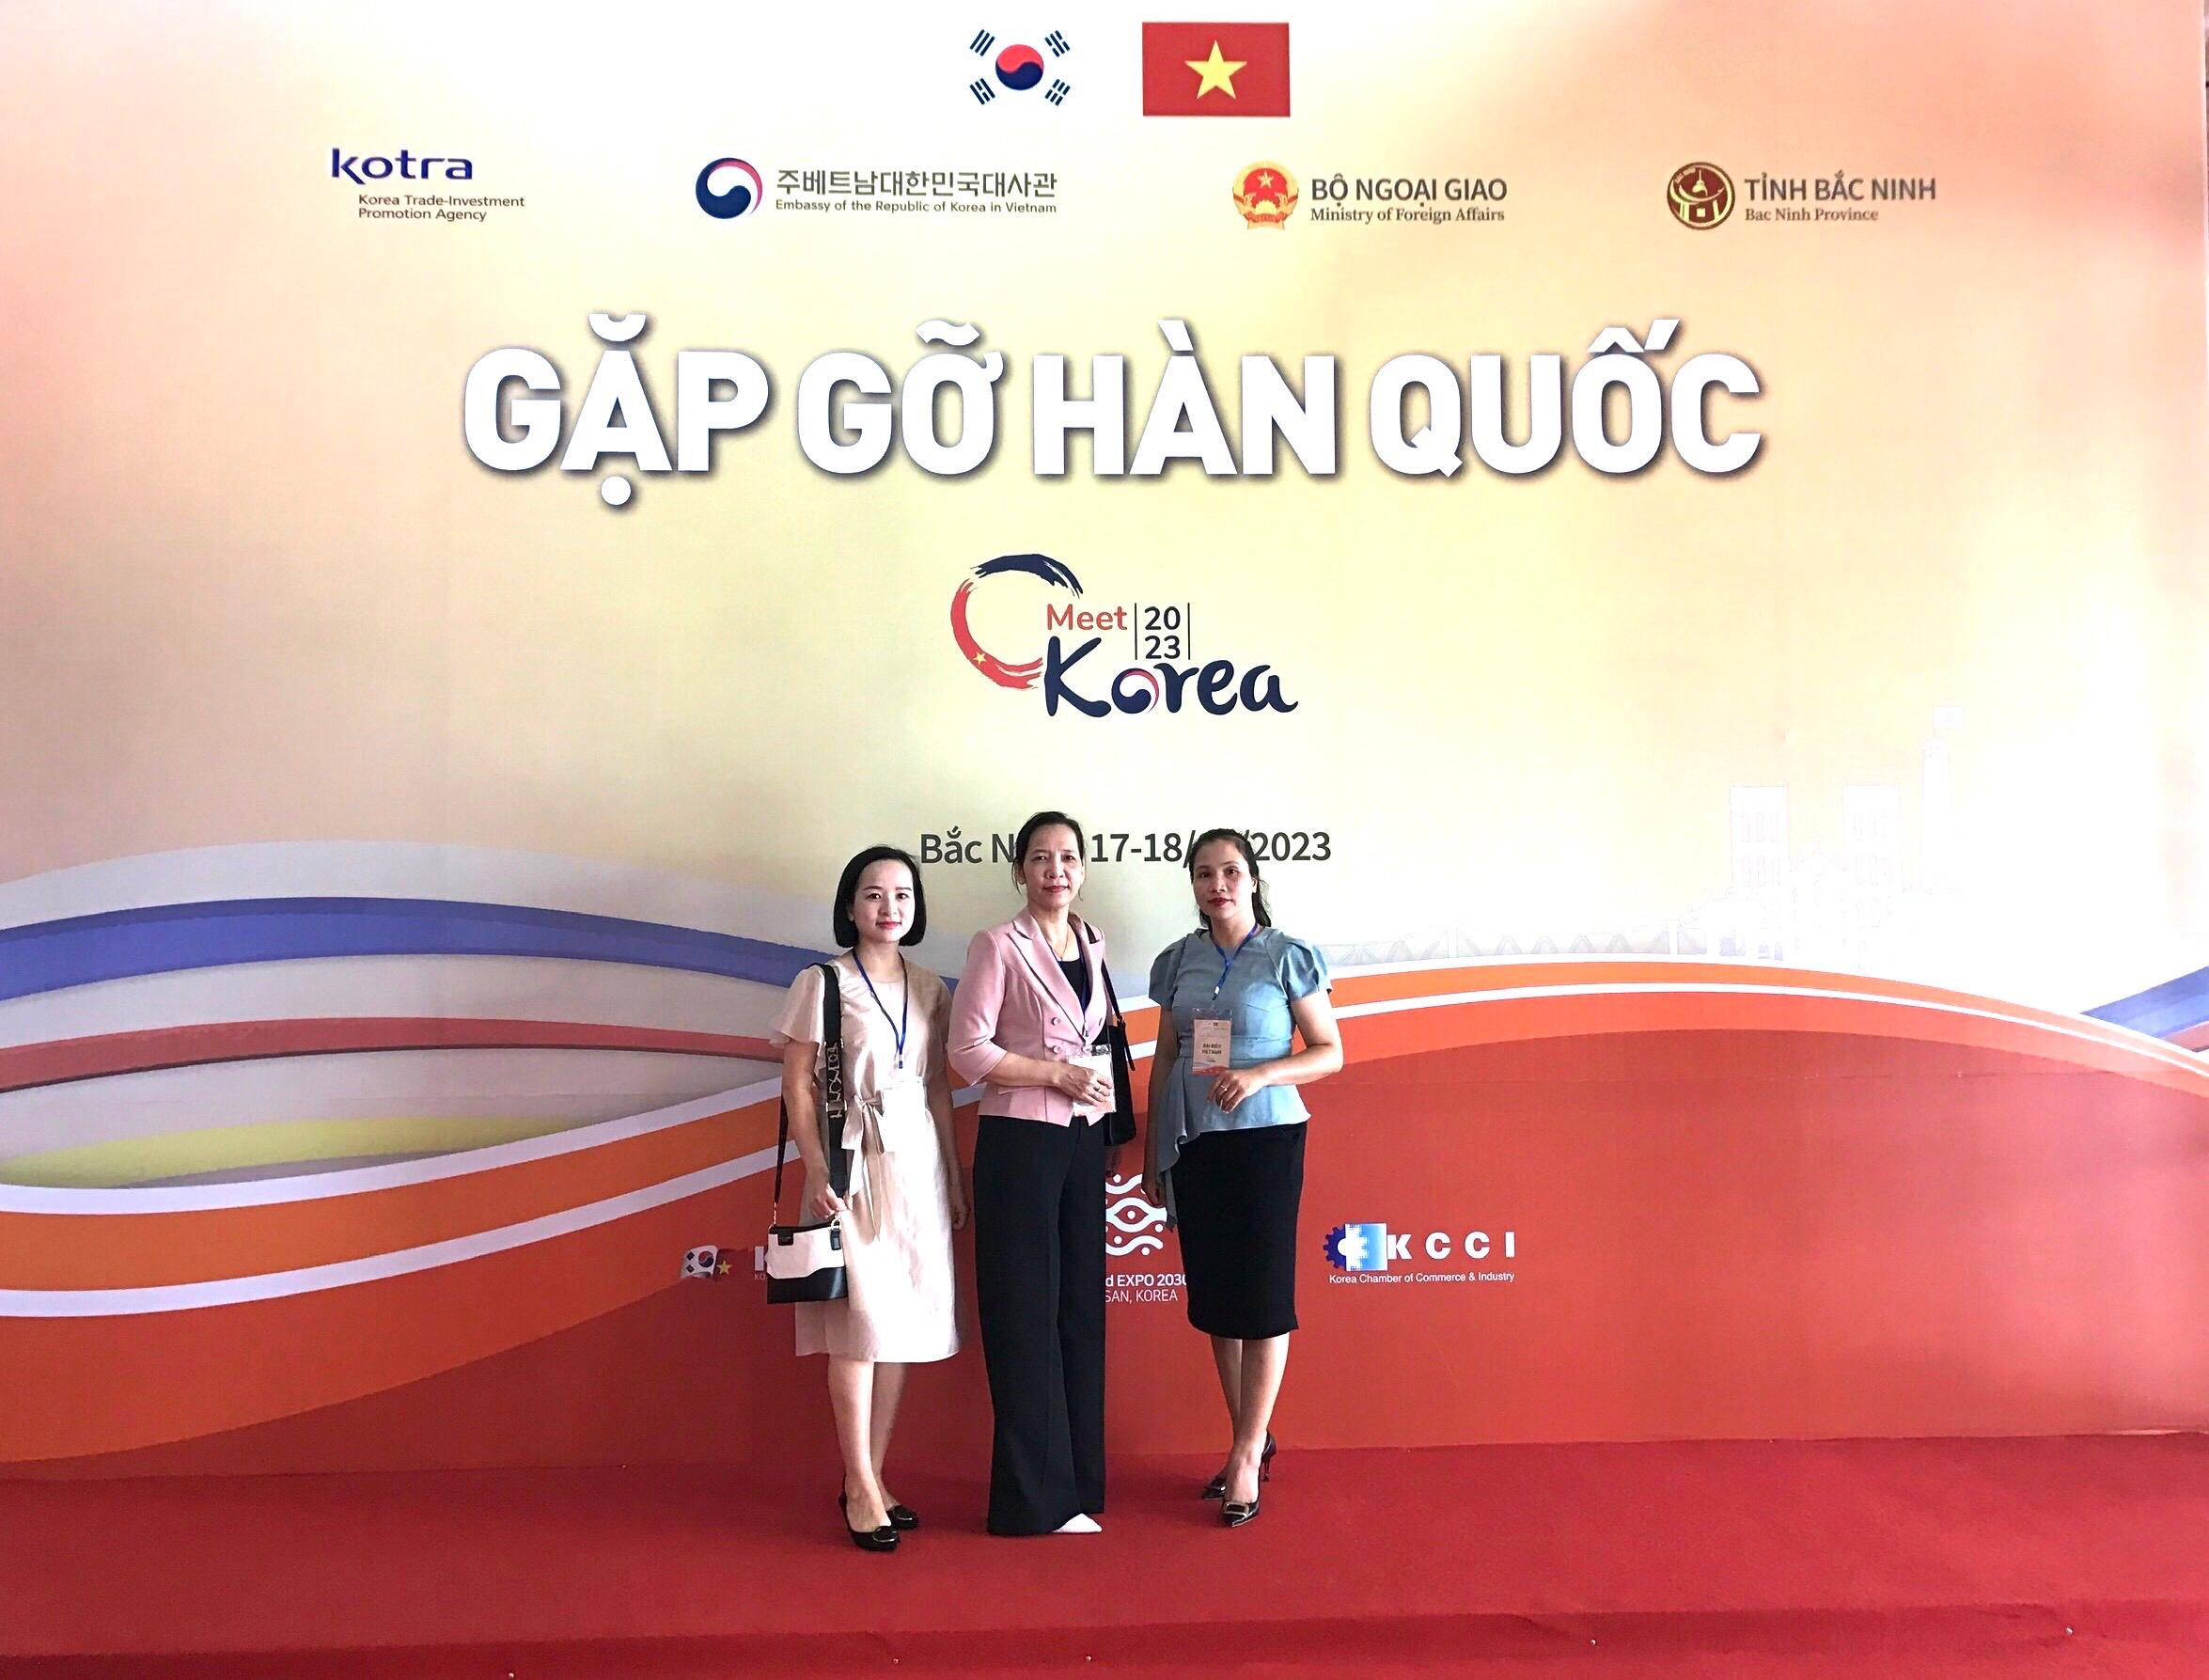 Giám đốc Sở Ngoại vụ tham dự Hội nghị “Gặp gỡ Hàn Quốc” tại Bắc Ninh